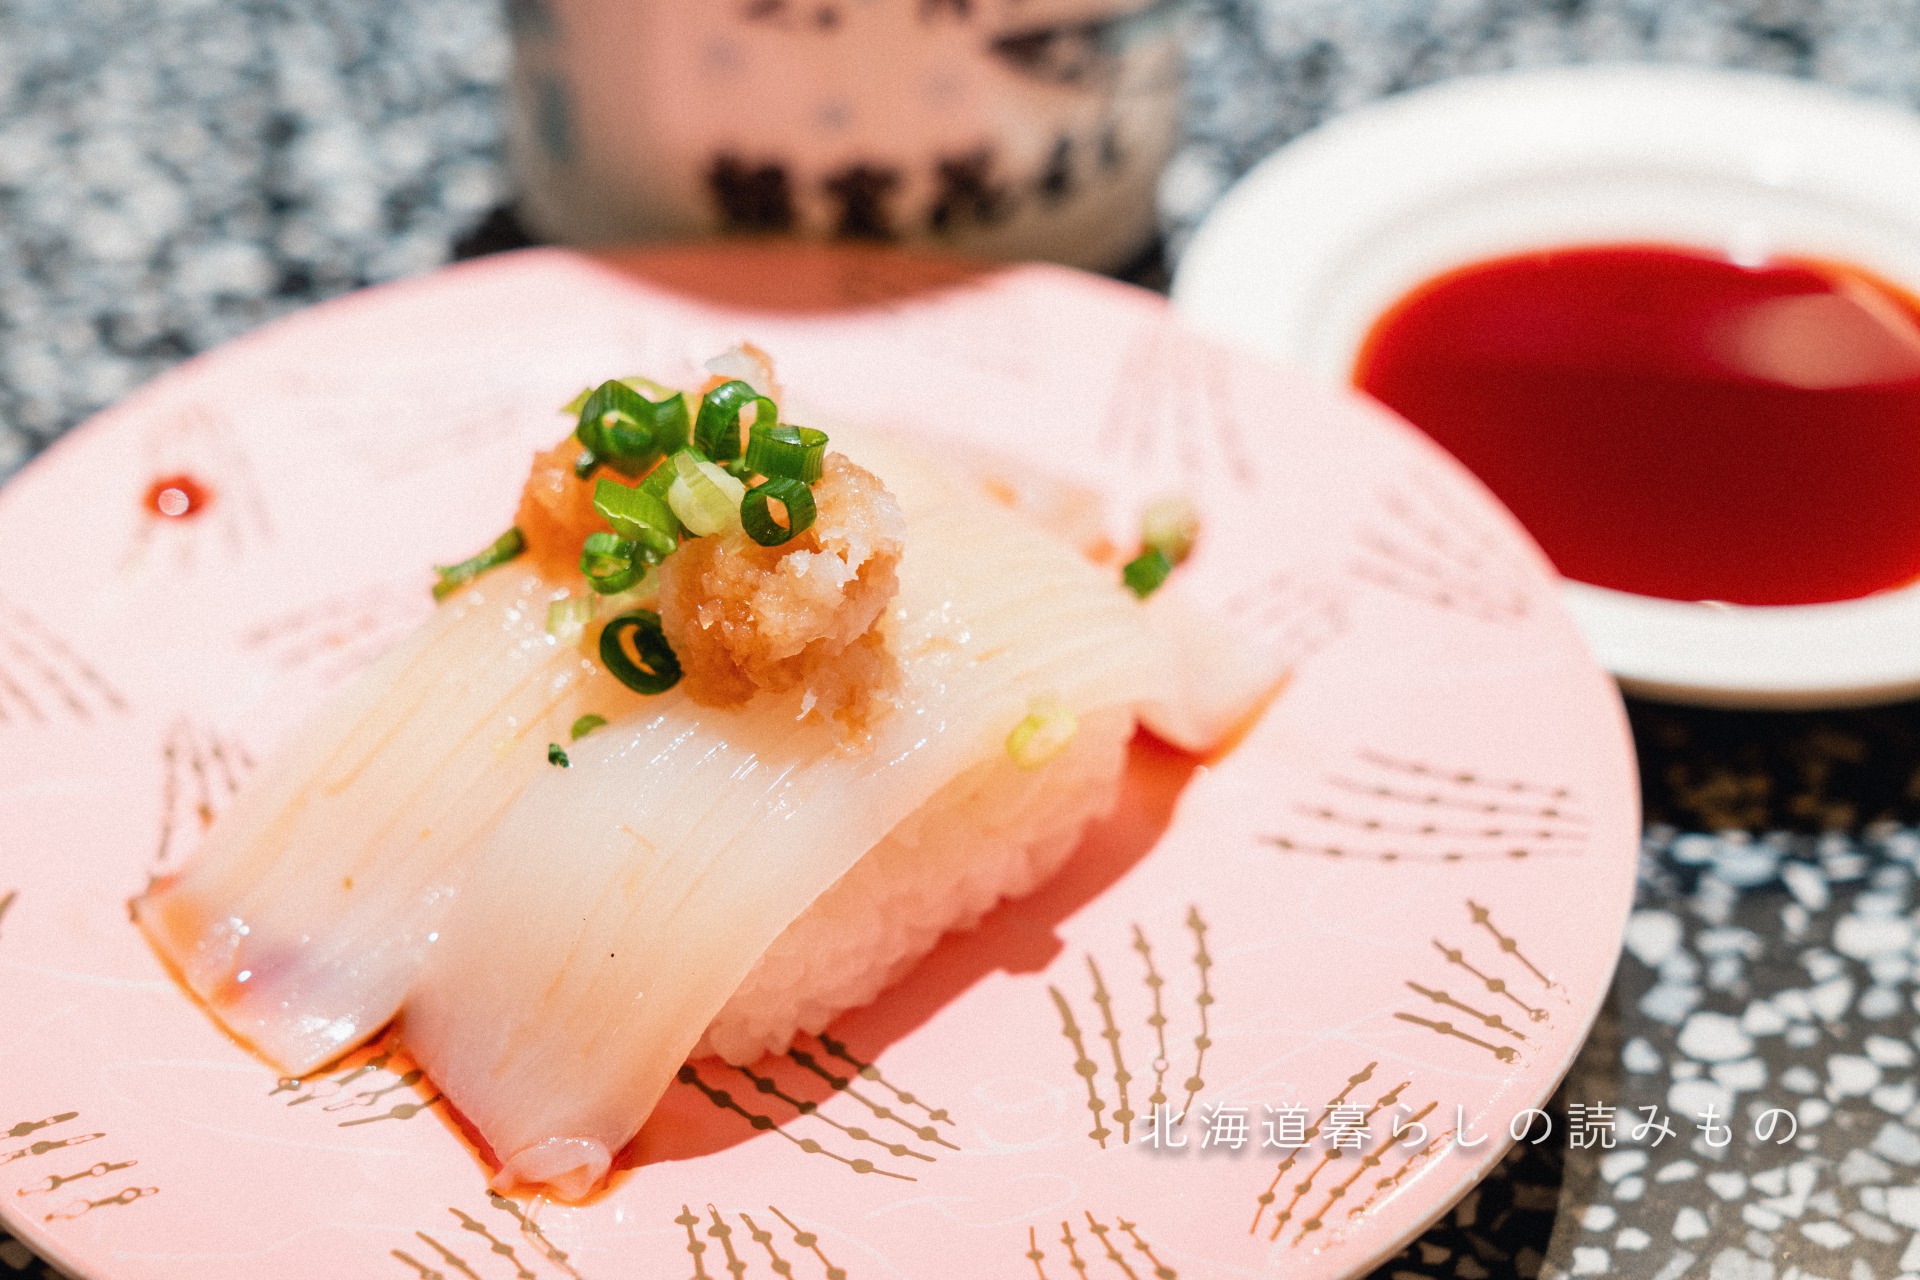 迴轉壽司根室花丸的菜單上的「Squid with Grated Daikon Radish Ponzu Sauce」